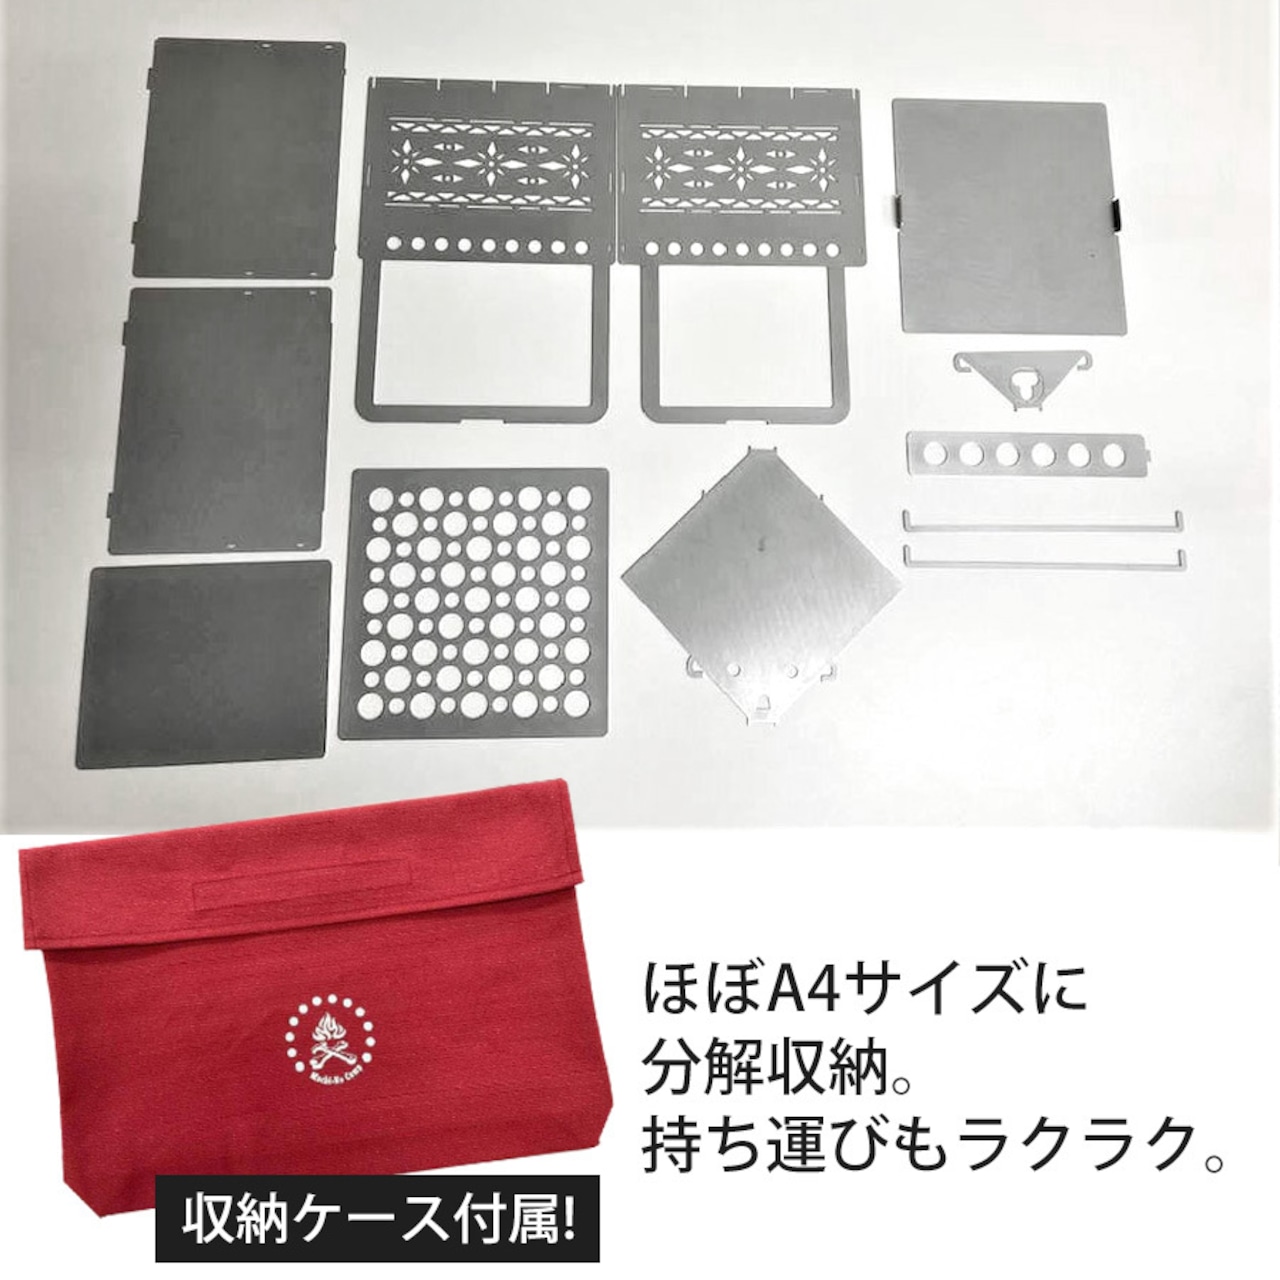 【ピザ窯・鉄板セット】タシロ 3WAY ピザ 窯 選べる鉄板セット